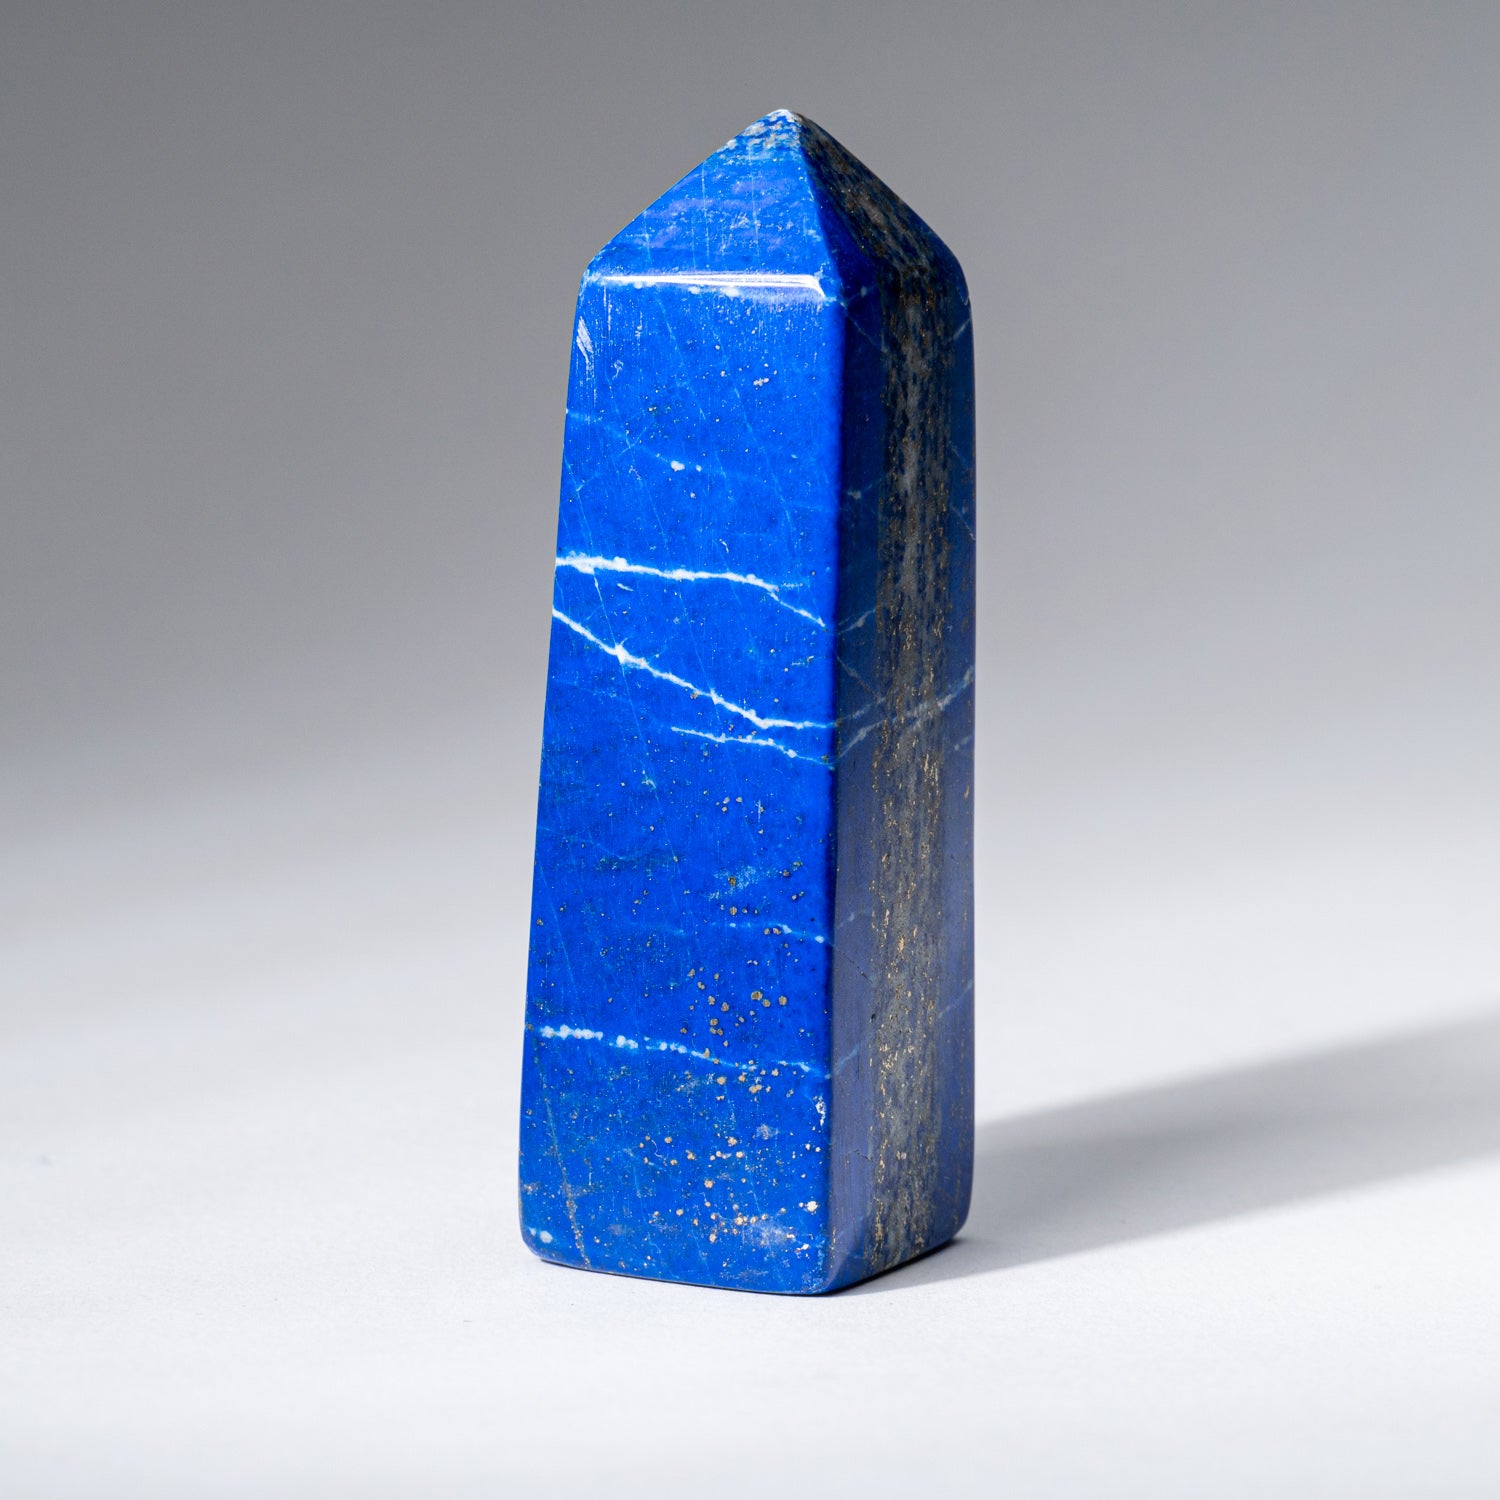 Polished Lapis Lazuli Obelisk from Afghanistan (110.7 grams)